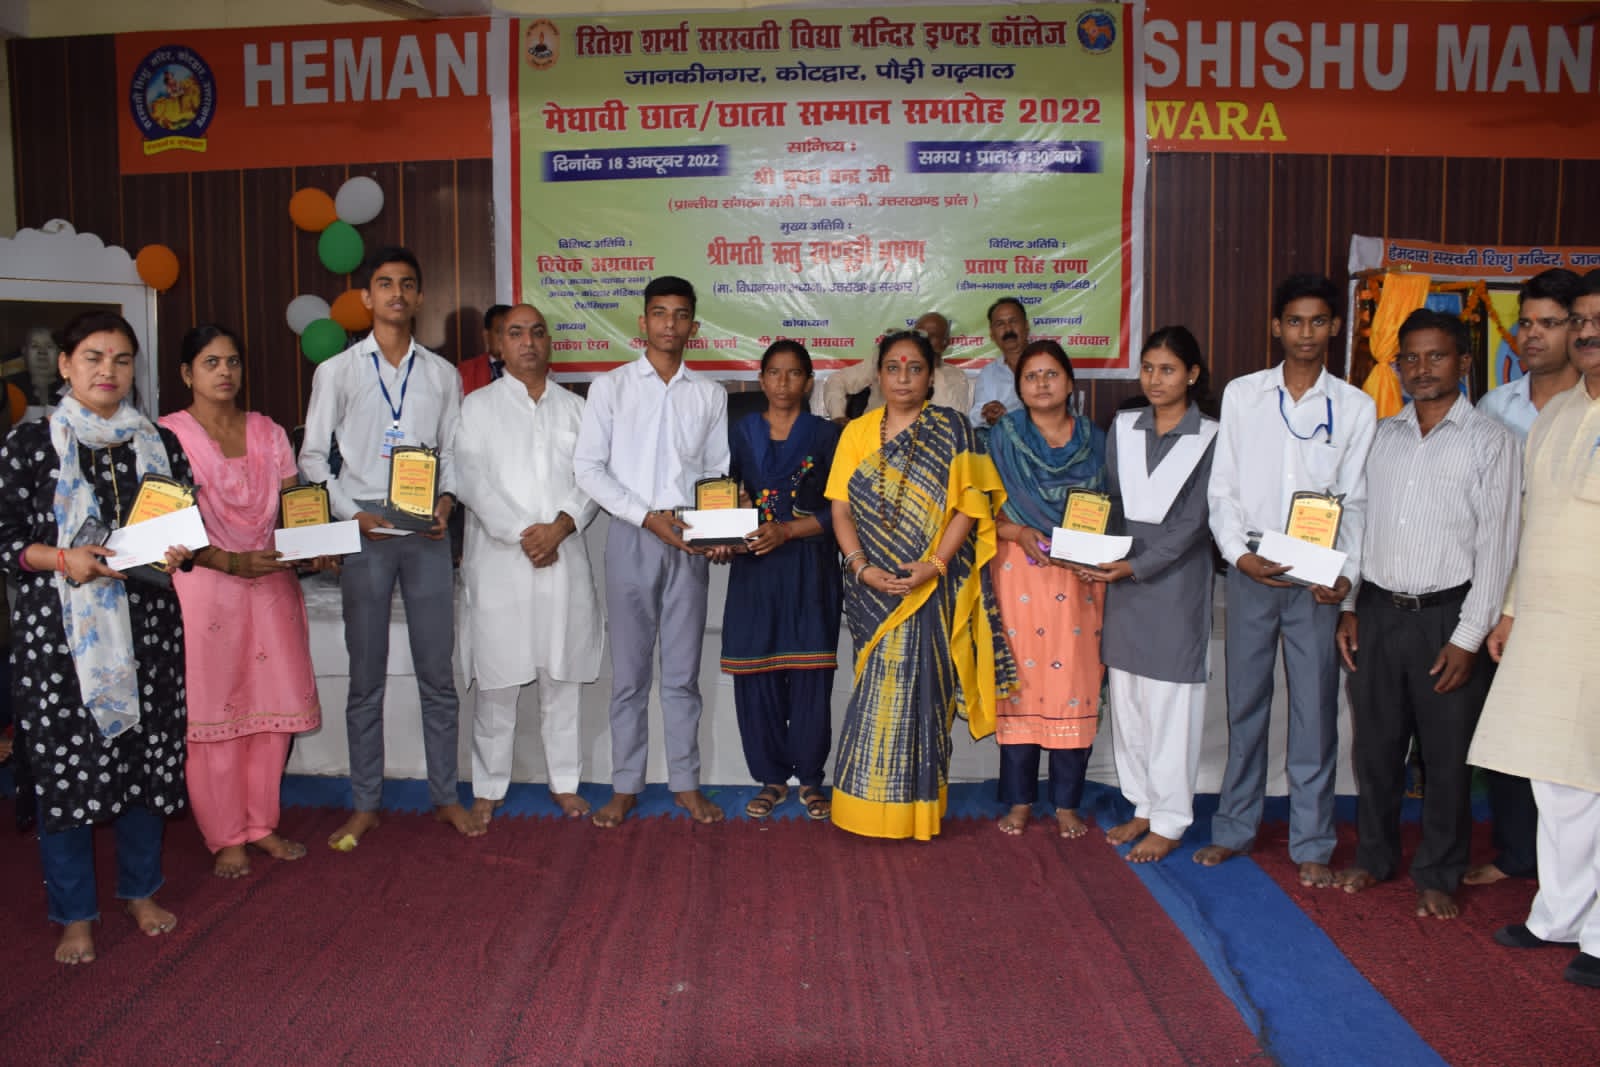 रितेश शर्मा सरस्वती विद्या मंदिर इंटर कॉलेज, जानकीनगर में दिवंगत रितेश शर्मा की जयंती पर 21 मेधावी छात्र-छात्राओं और 11 खिलाड़ियों को सम्मानित किया गया,,,।